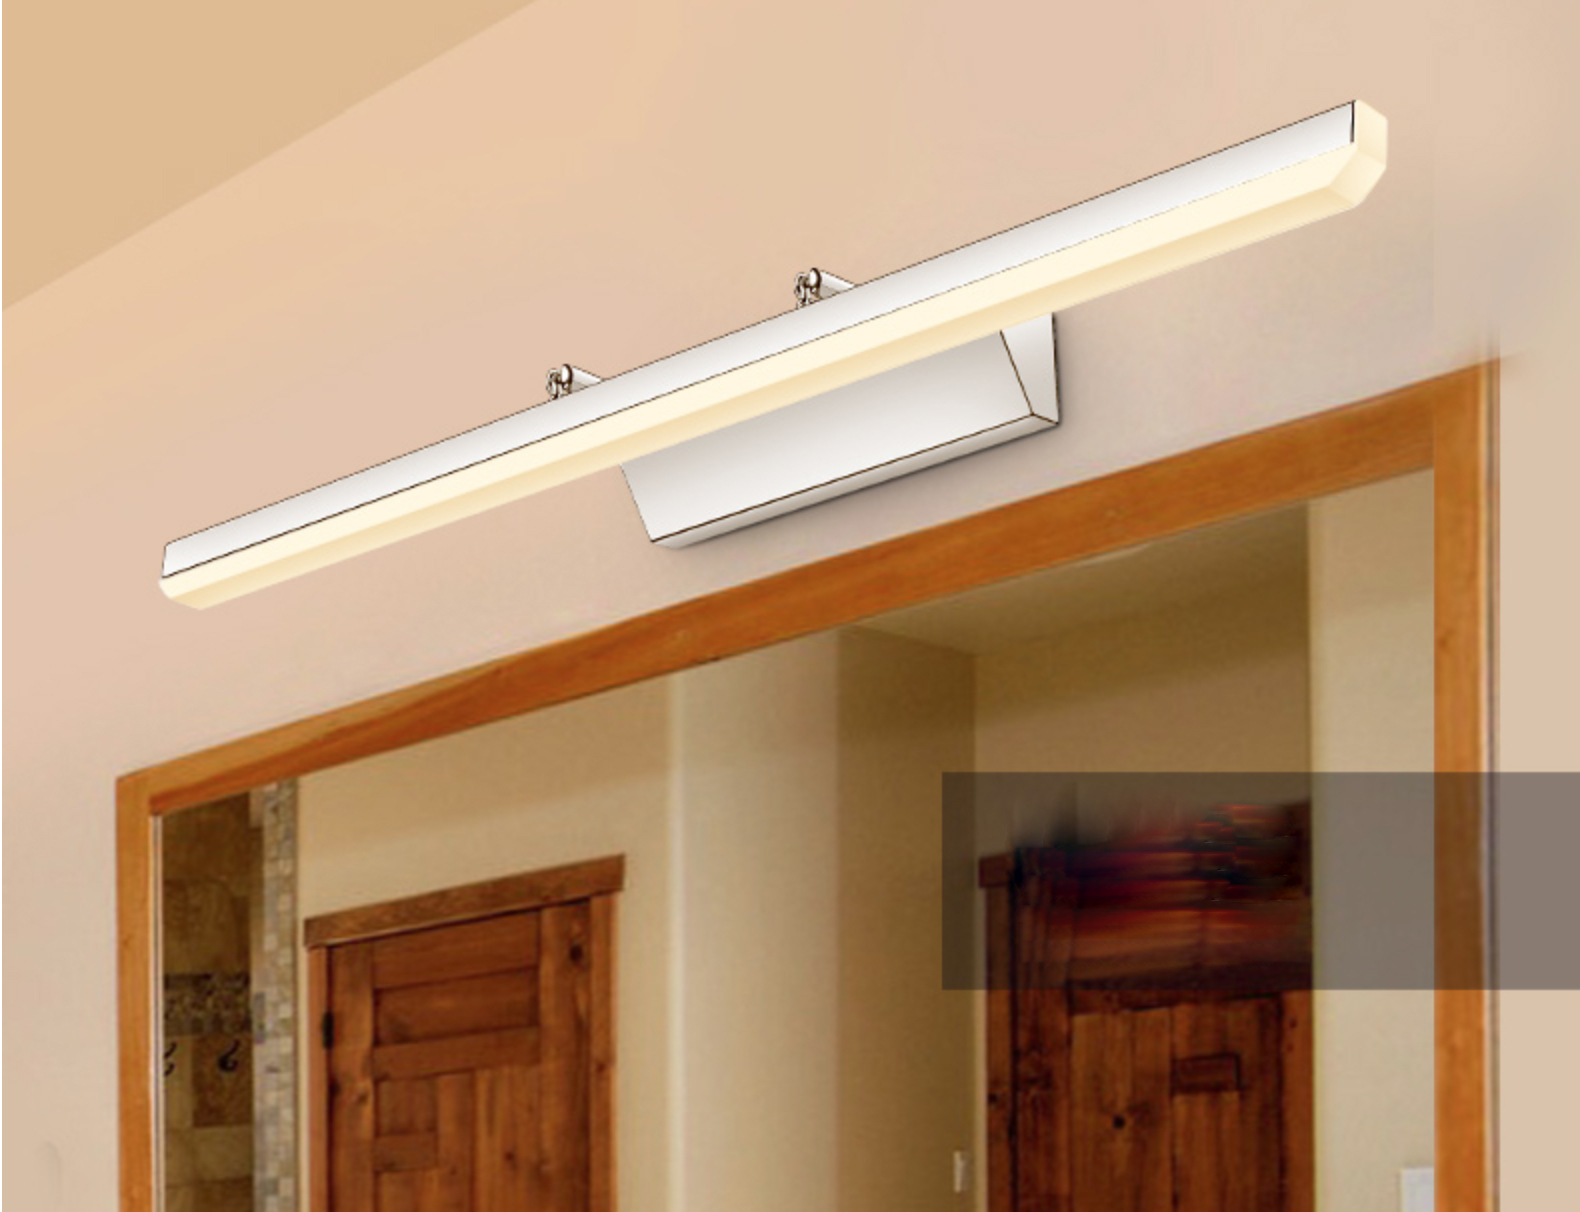  Đèn LED dẫn sáng trong nhà vệ sinh V2, chống nước chống loá cao cấp ánh sáng vàng